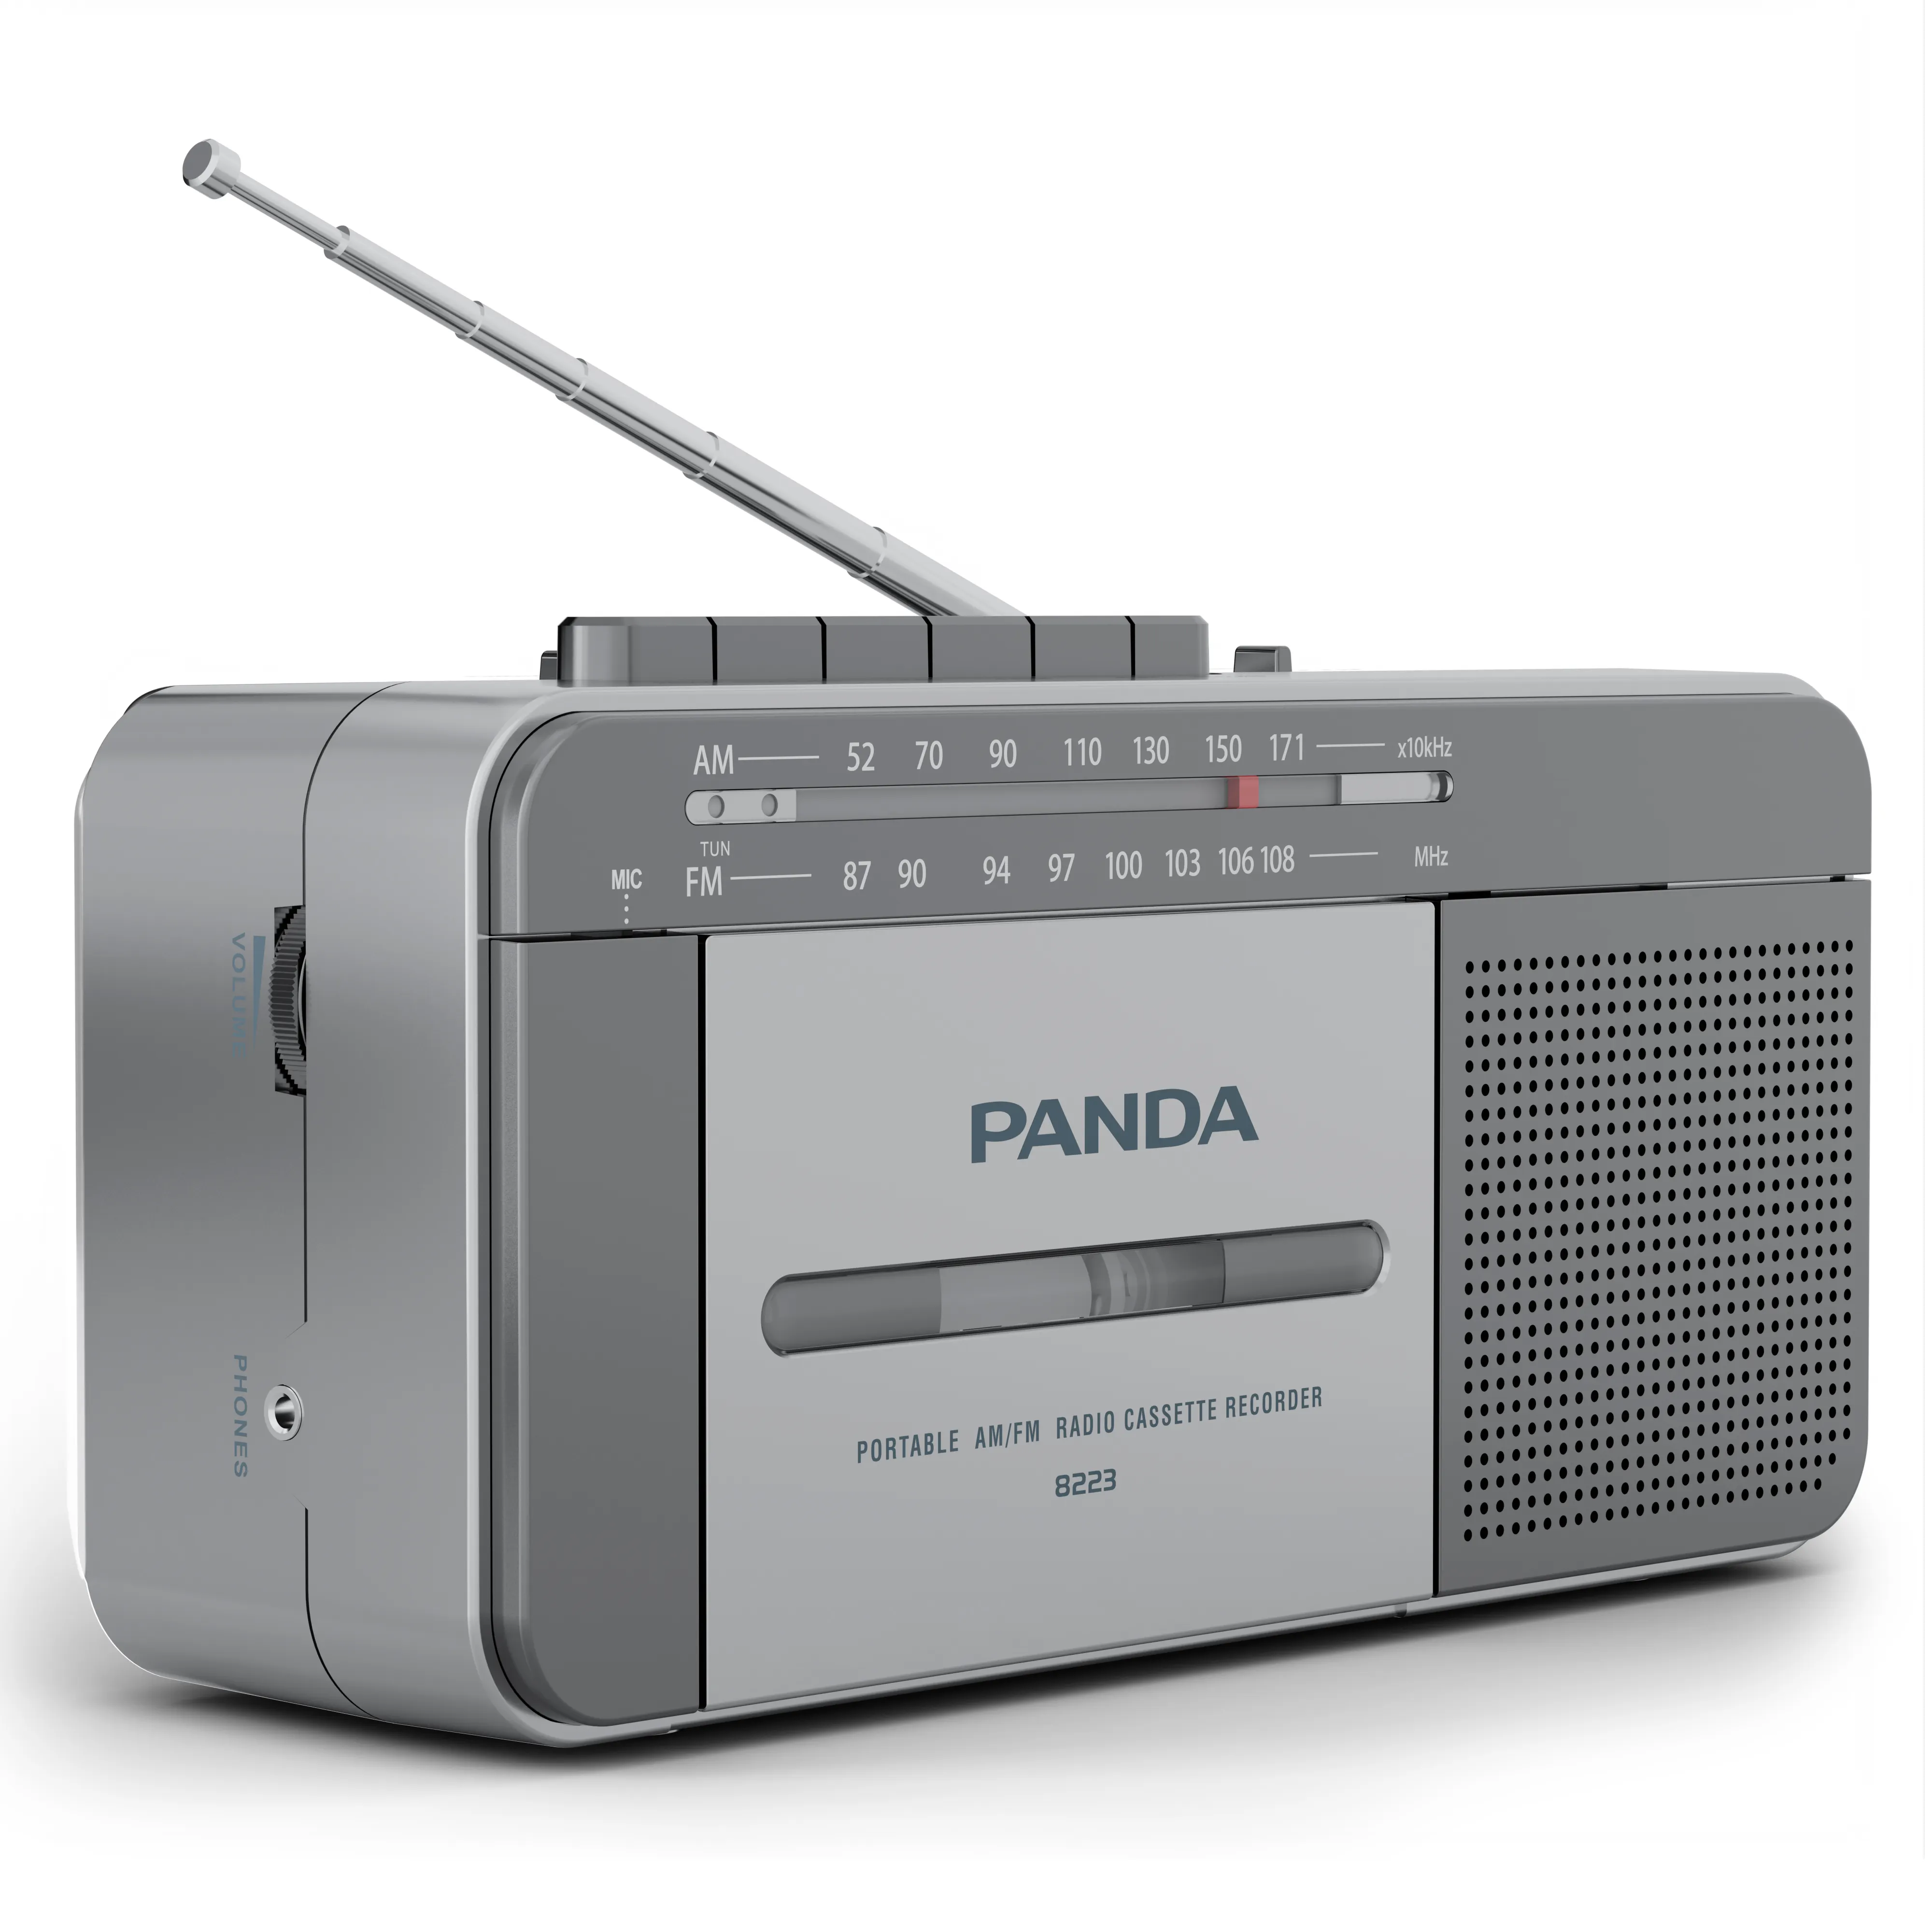 ODM OEM-reproductor de Cassette de Radio Fm clásico, personalizado, de buena calidad, Retro, Am, Fm, grabadora de Cassette